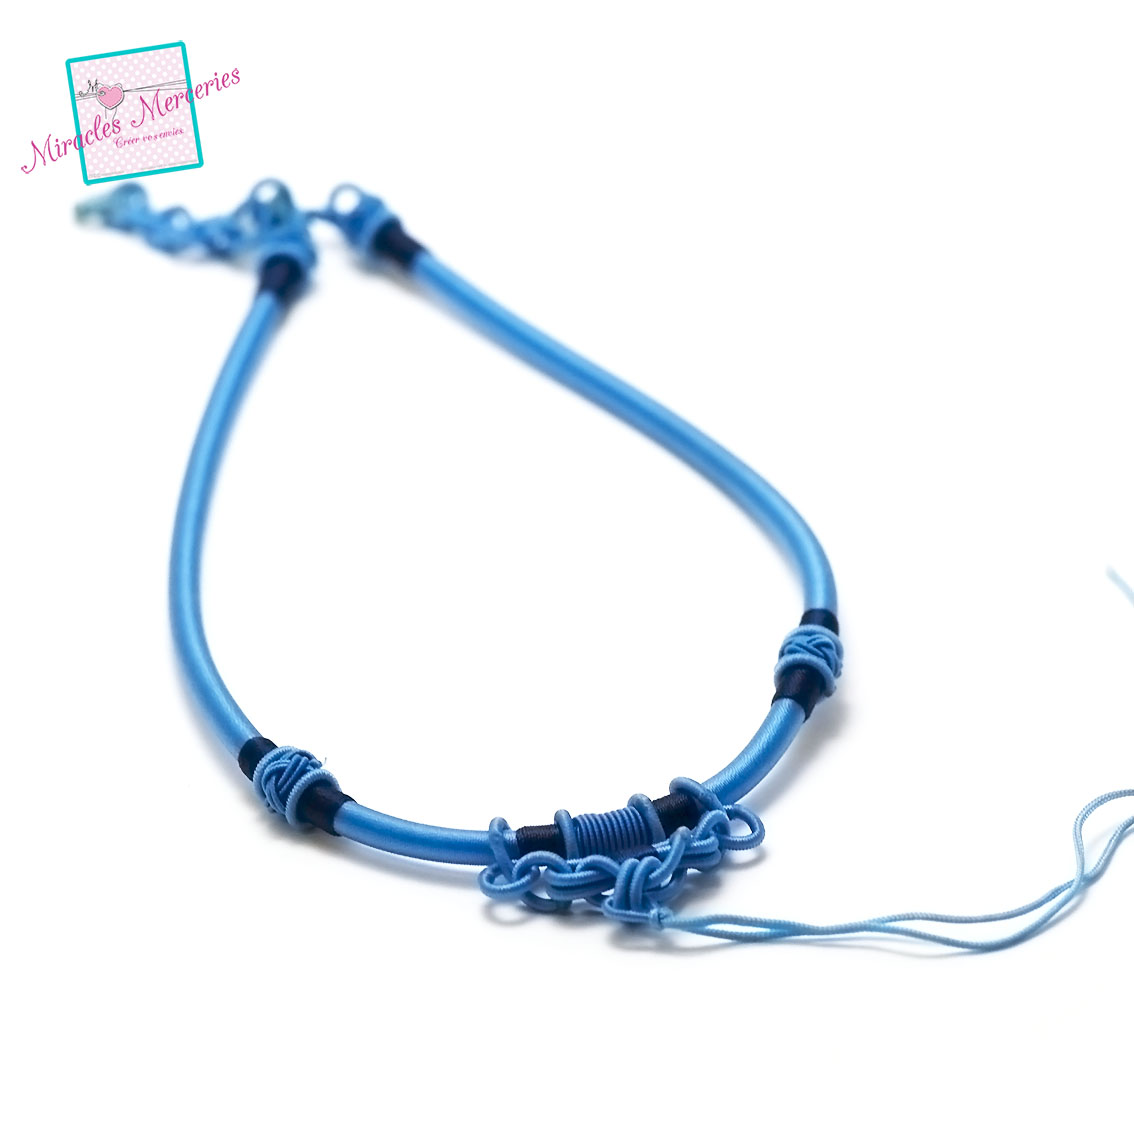 1 magnifique support collier créateur en fil de soie tressé à la main, bleu ciel